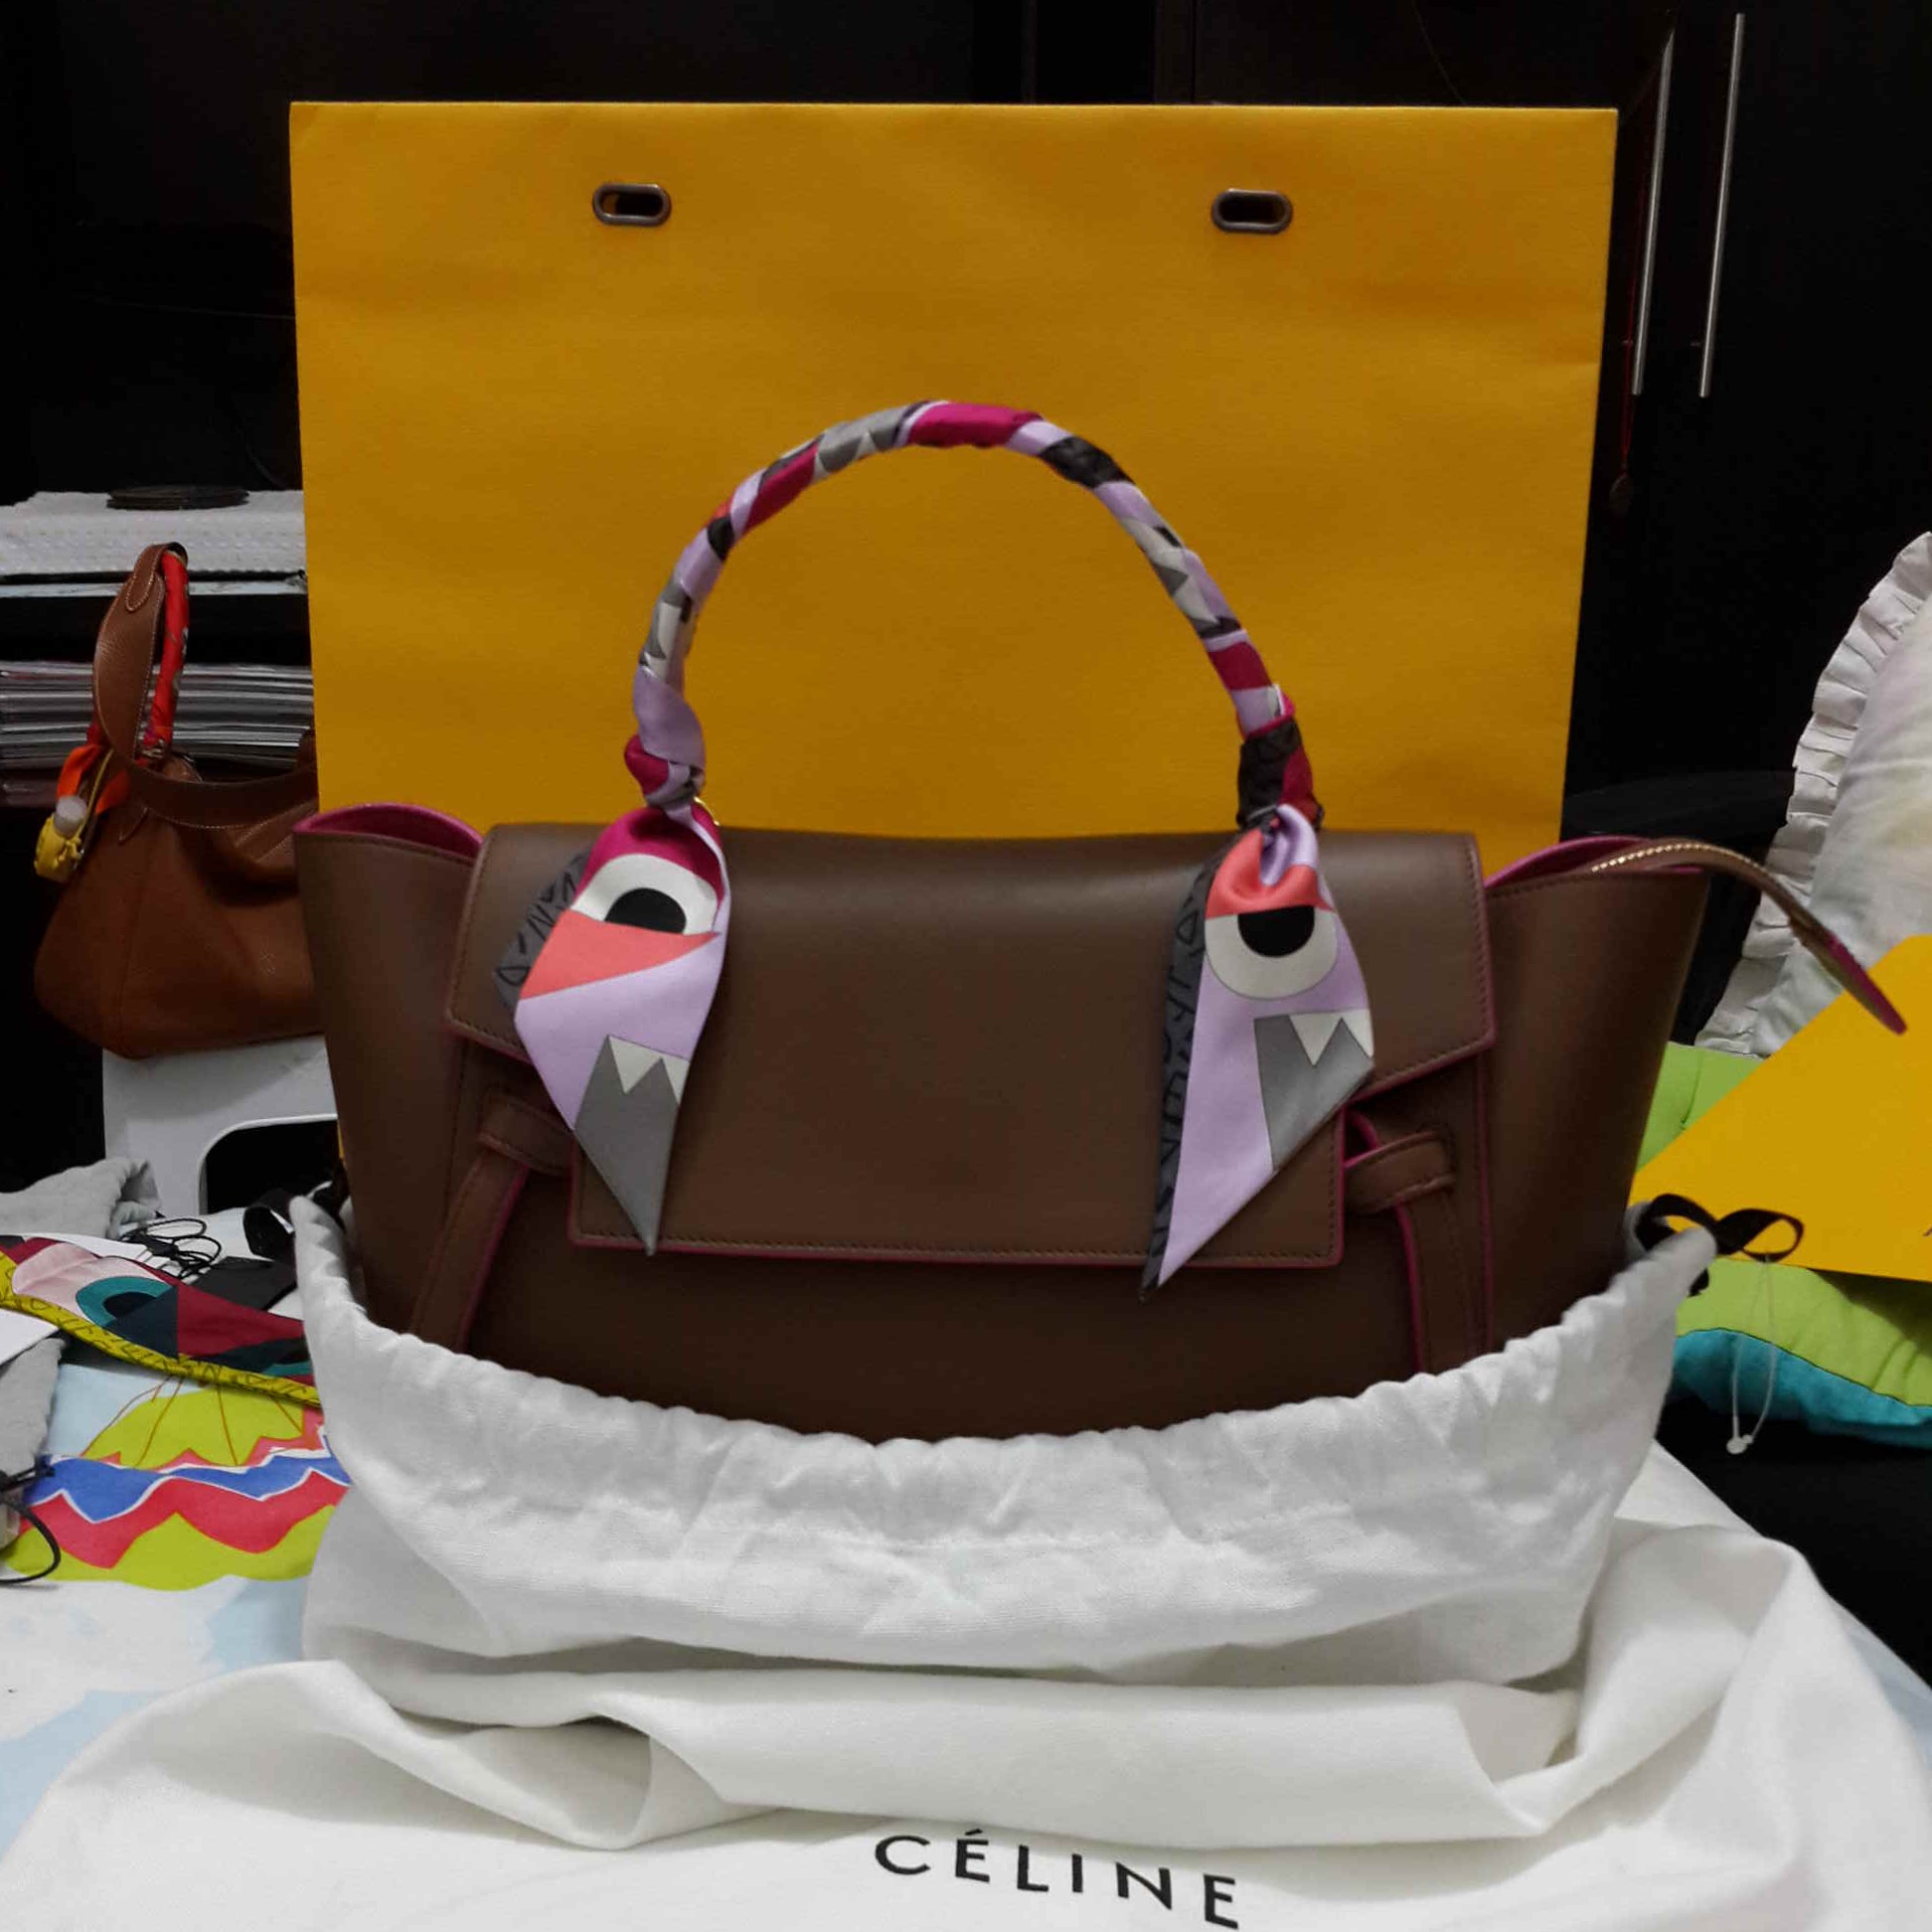 Review: Cline Belt Bag in Camel \u2013 BAGLOVINGGLOBETROTTER  